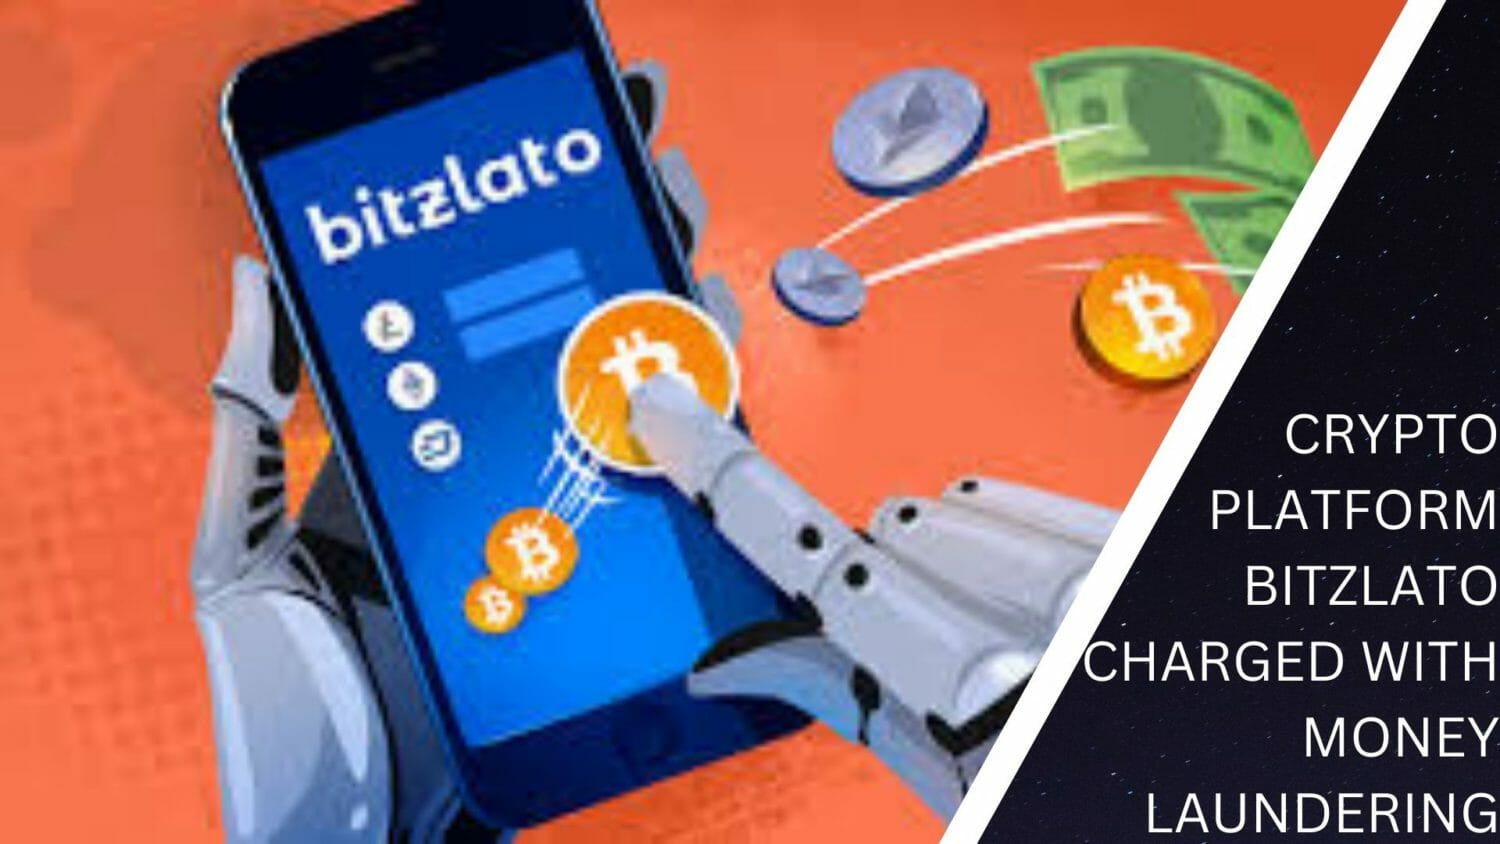 Crypto Platform Bitzlato Charged With Money Laundering